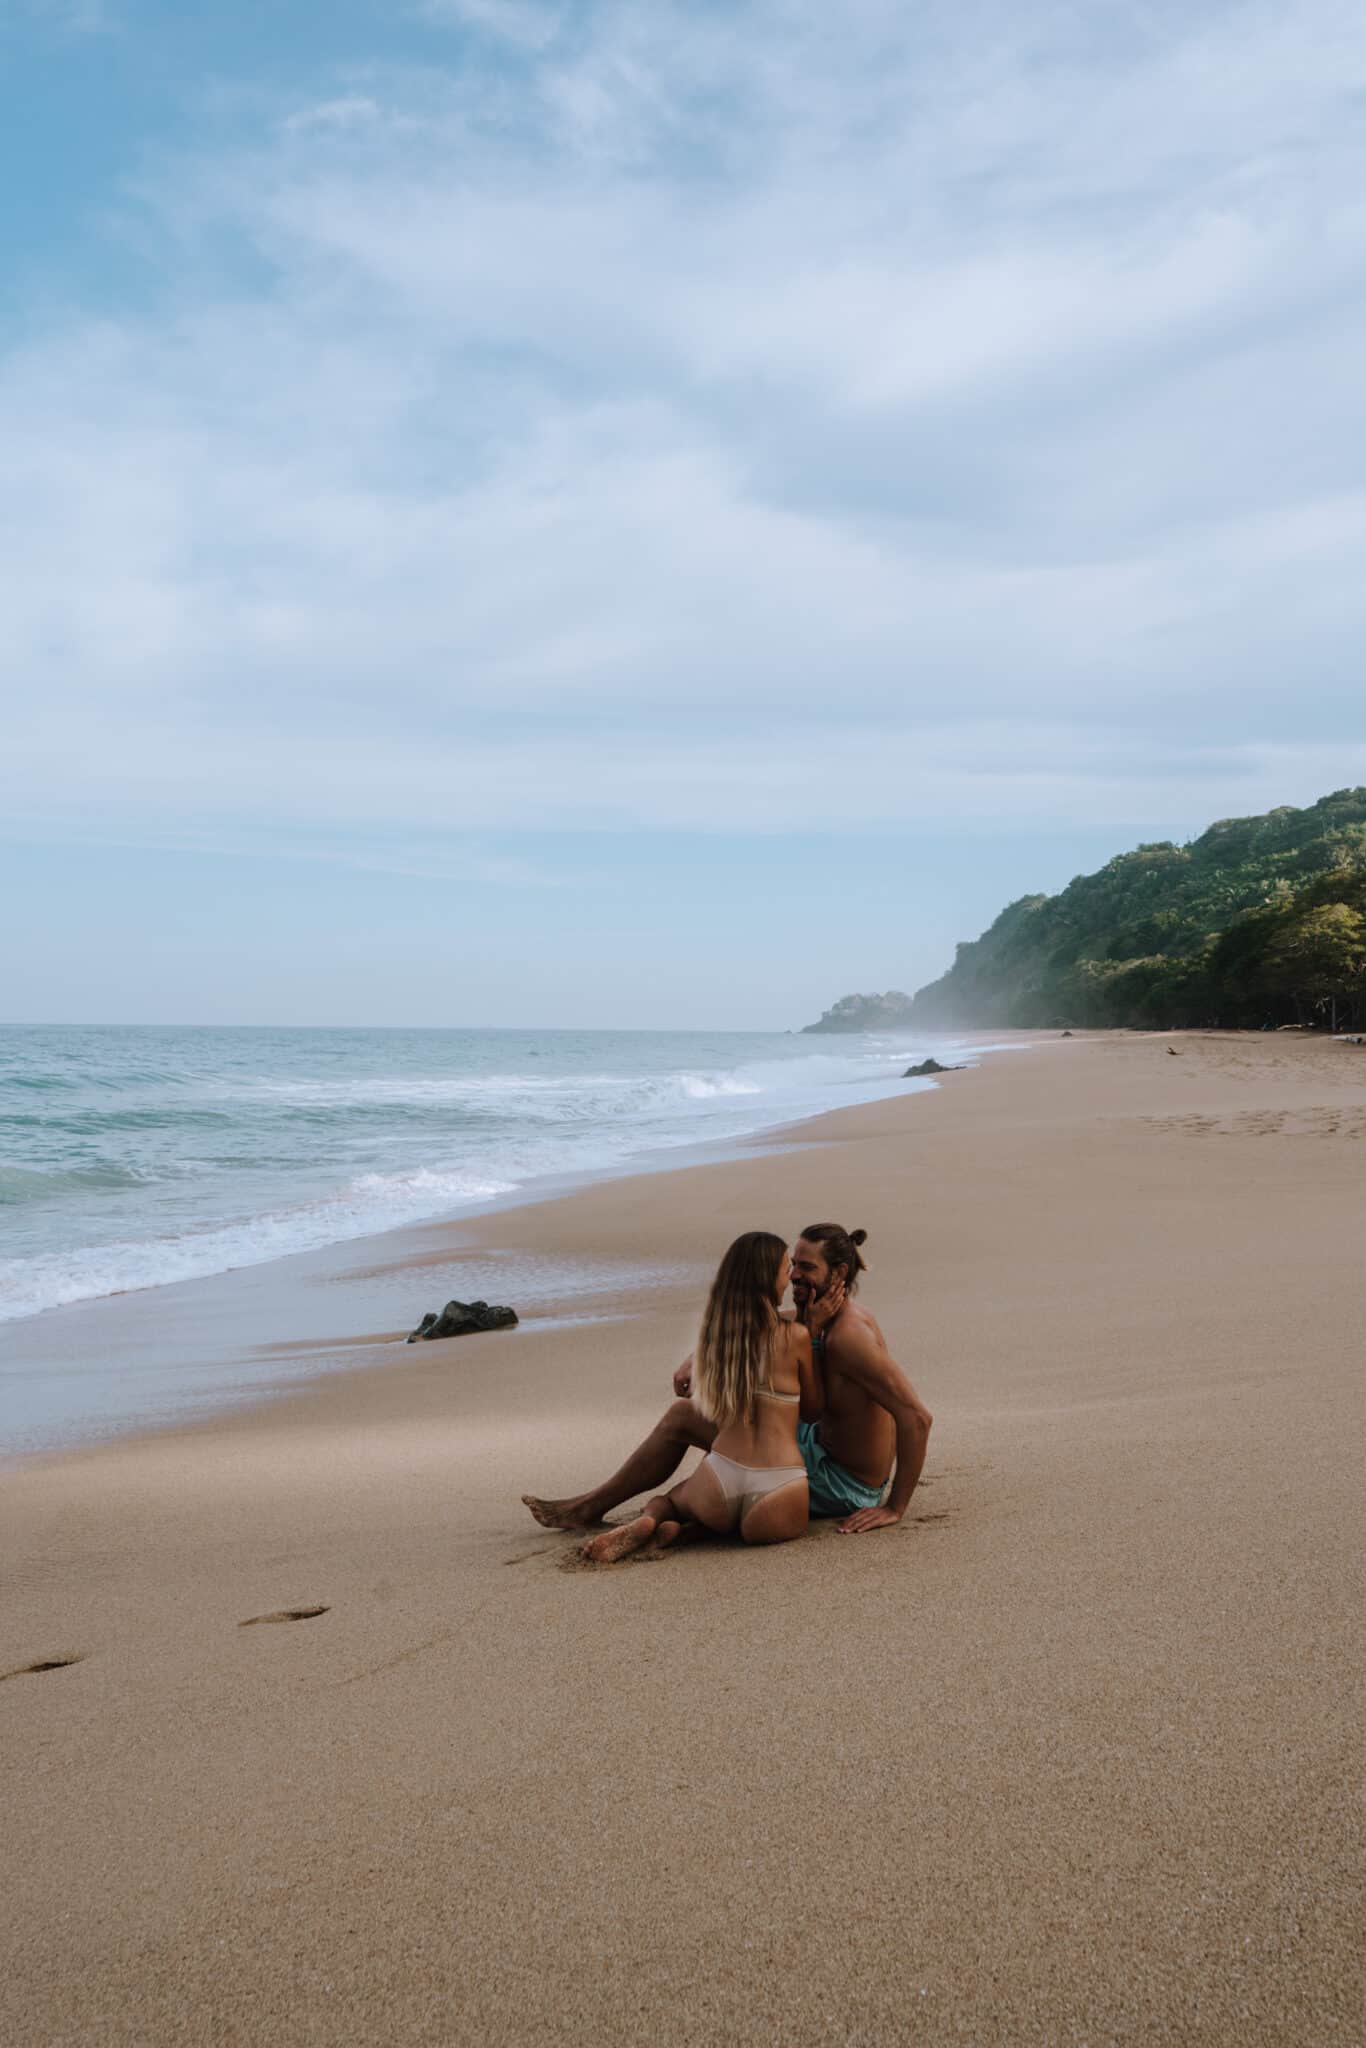 Two people sitting on a beach in Sayulita, Costa Rica.